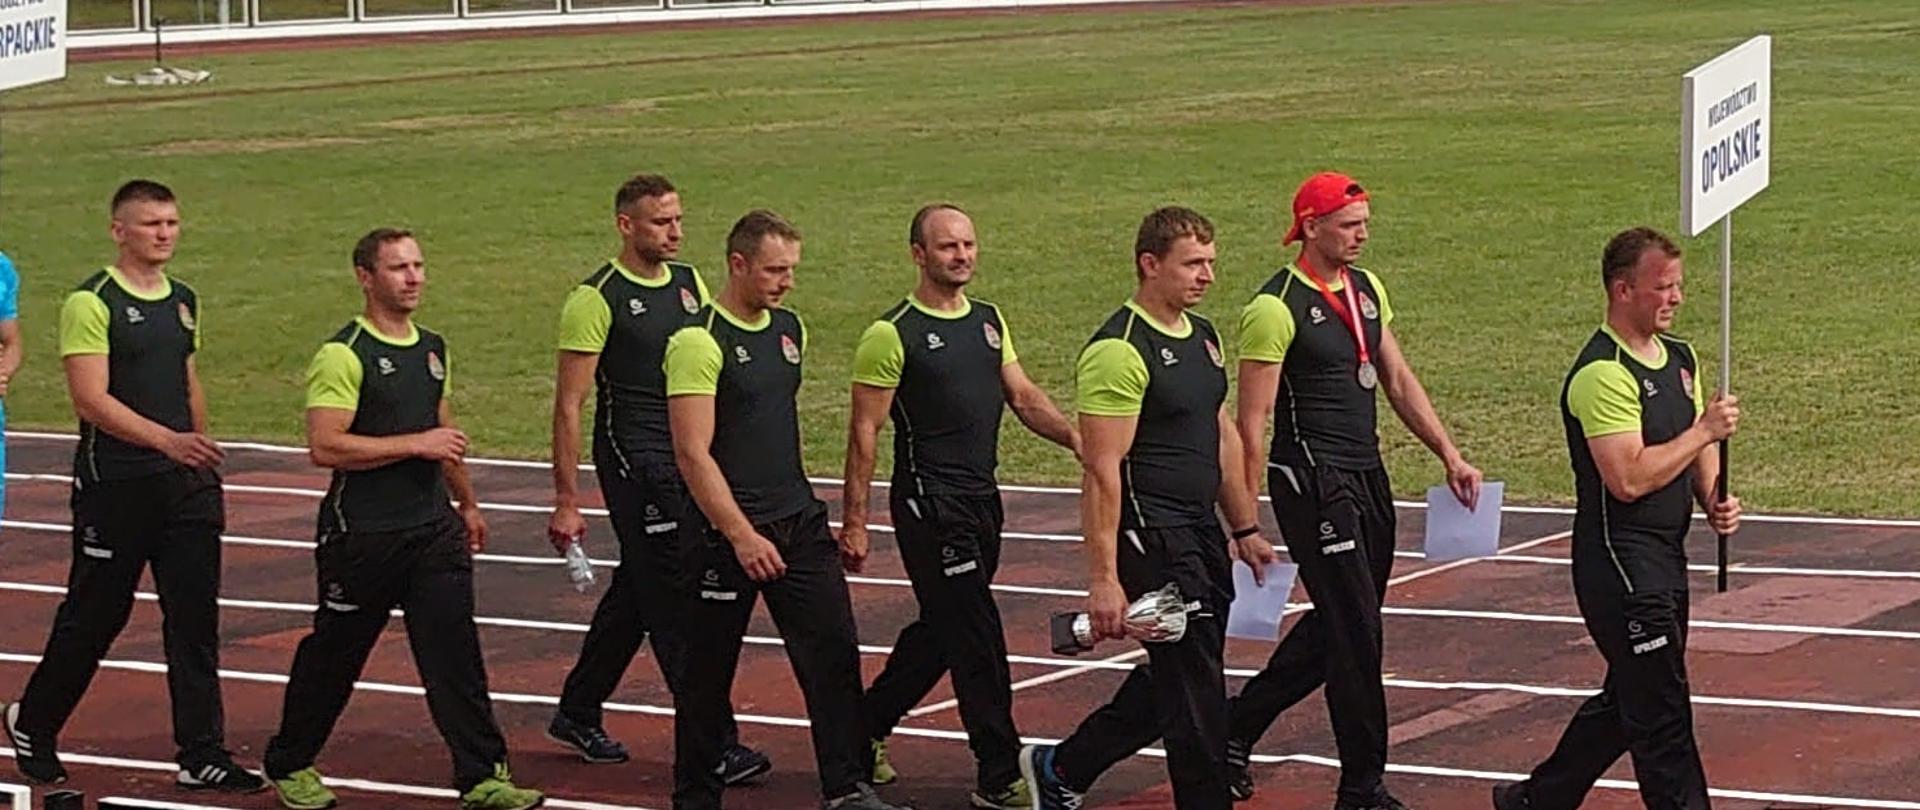 Zdjęcie przedstawia ośmiu zawodników na bieżni lekkoatletycznej podczas przemarszu na otwarcie MP